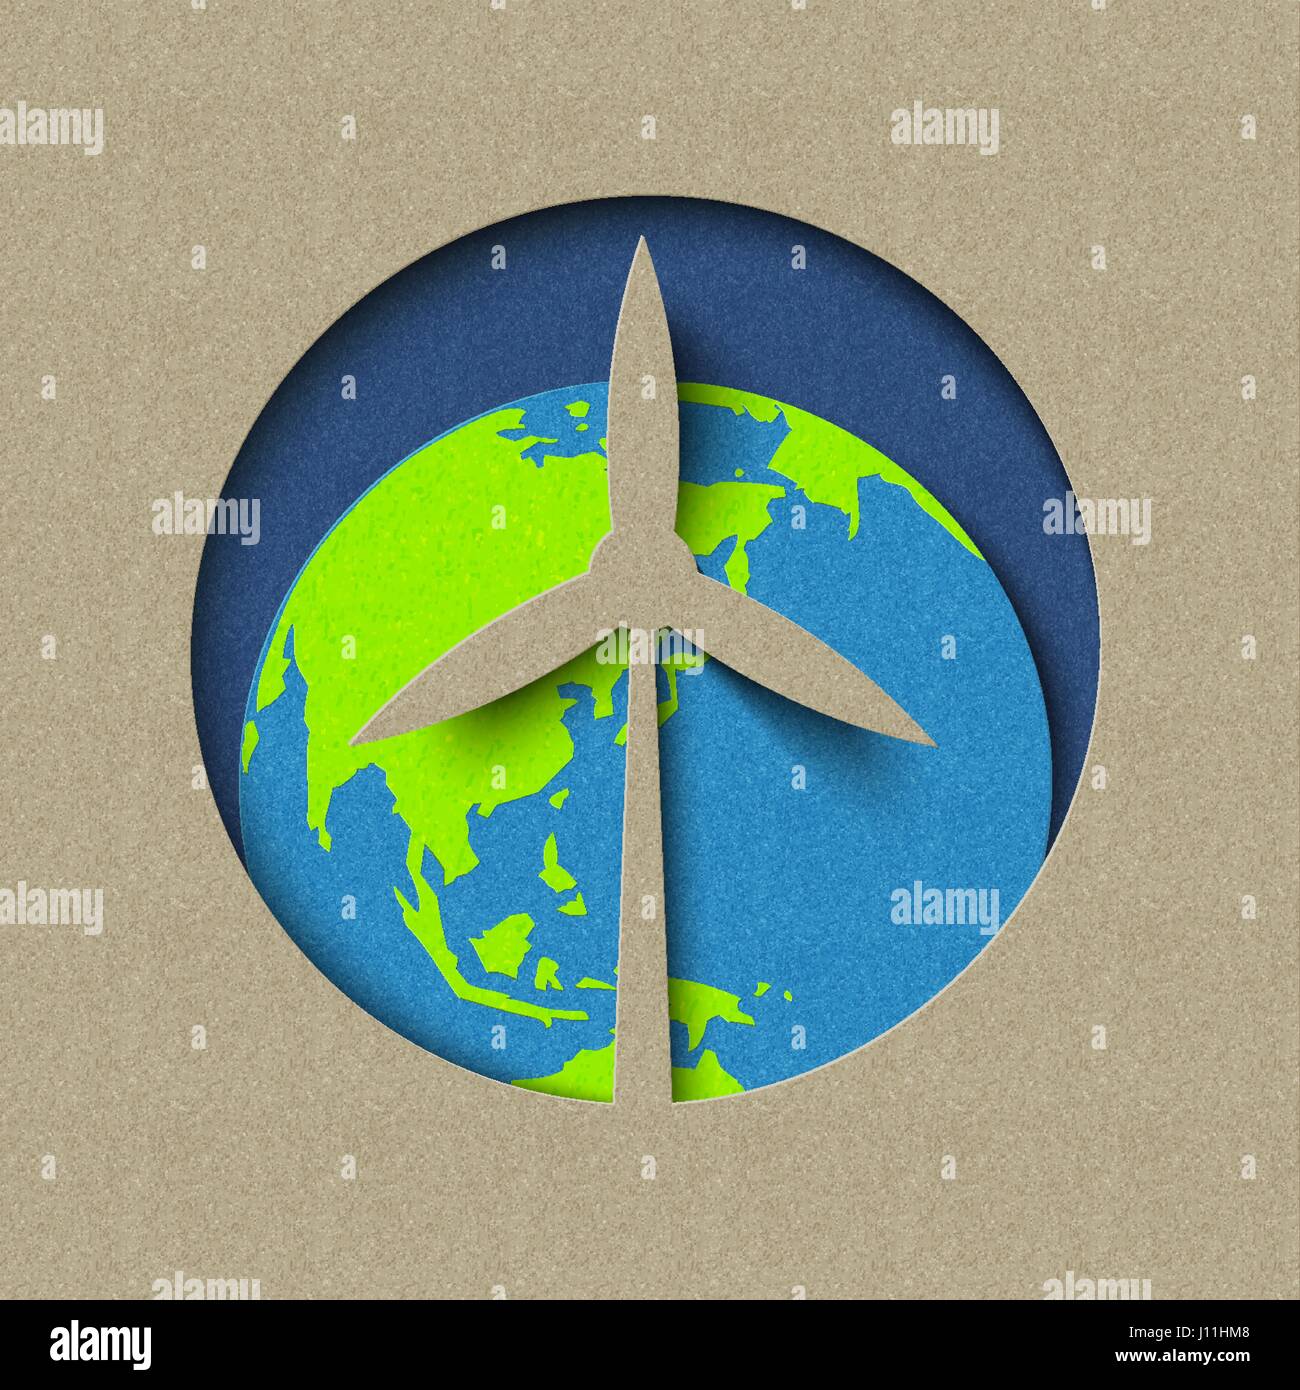 Le jour de la terre papier coupé concept pour l'énergie éolienne verte et la conservation. Illustration de soins mondiale de l'environnement. Vecteur EPS10. Illustration de Vecteur